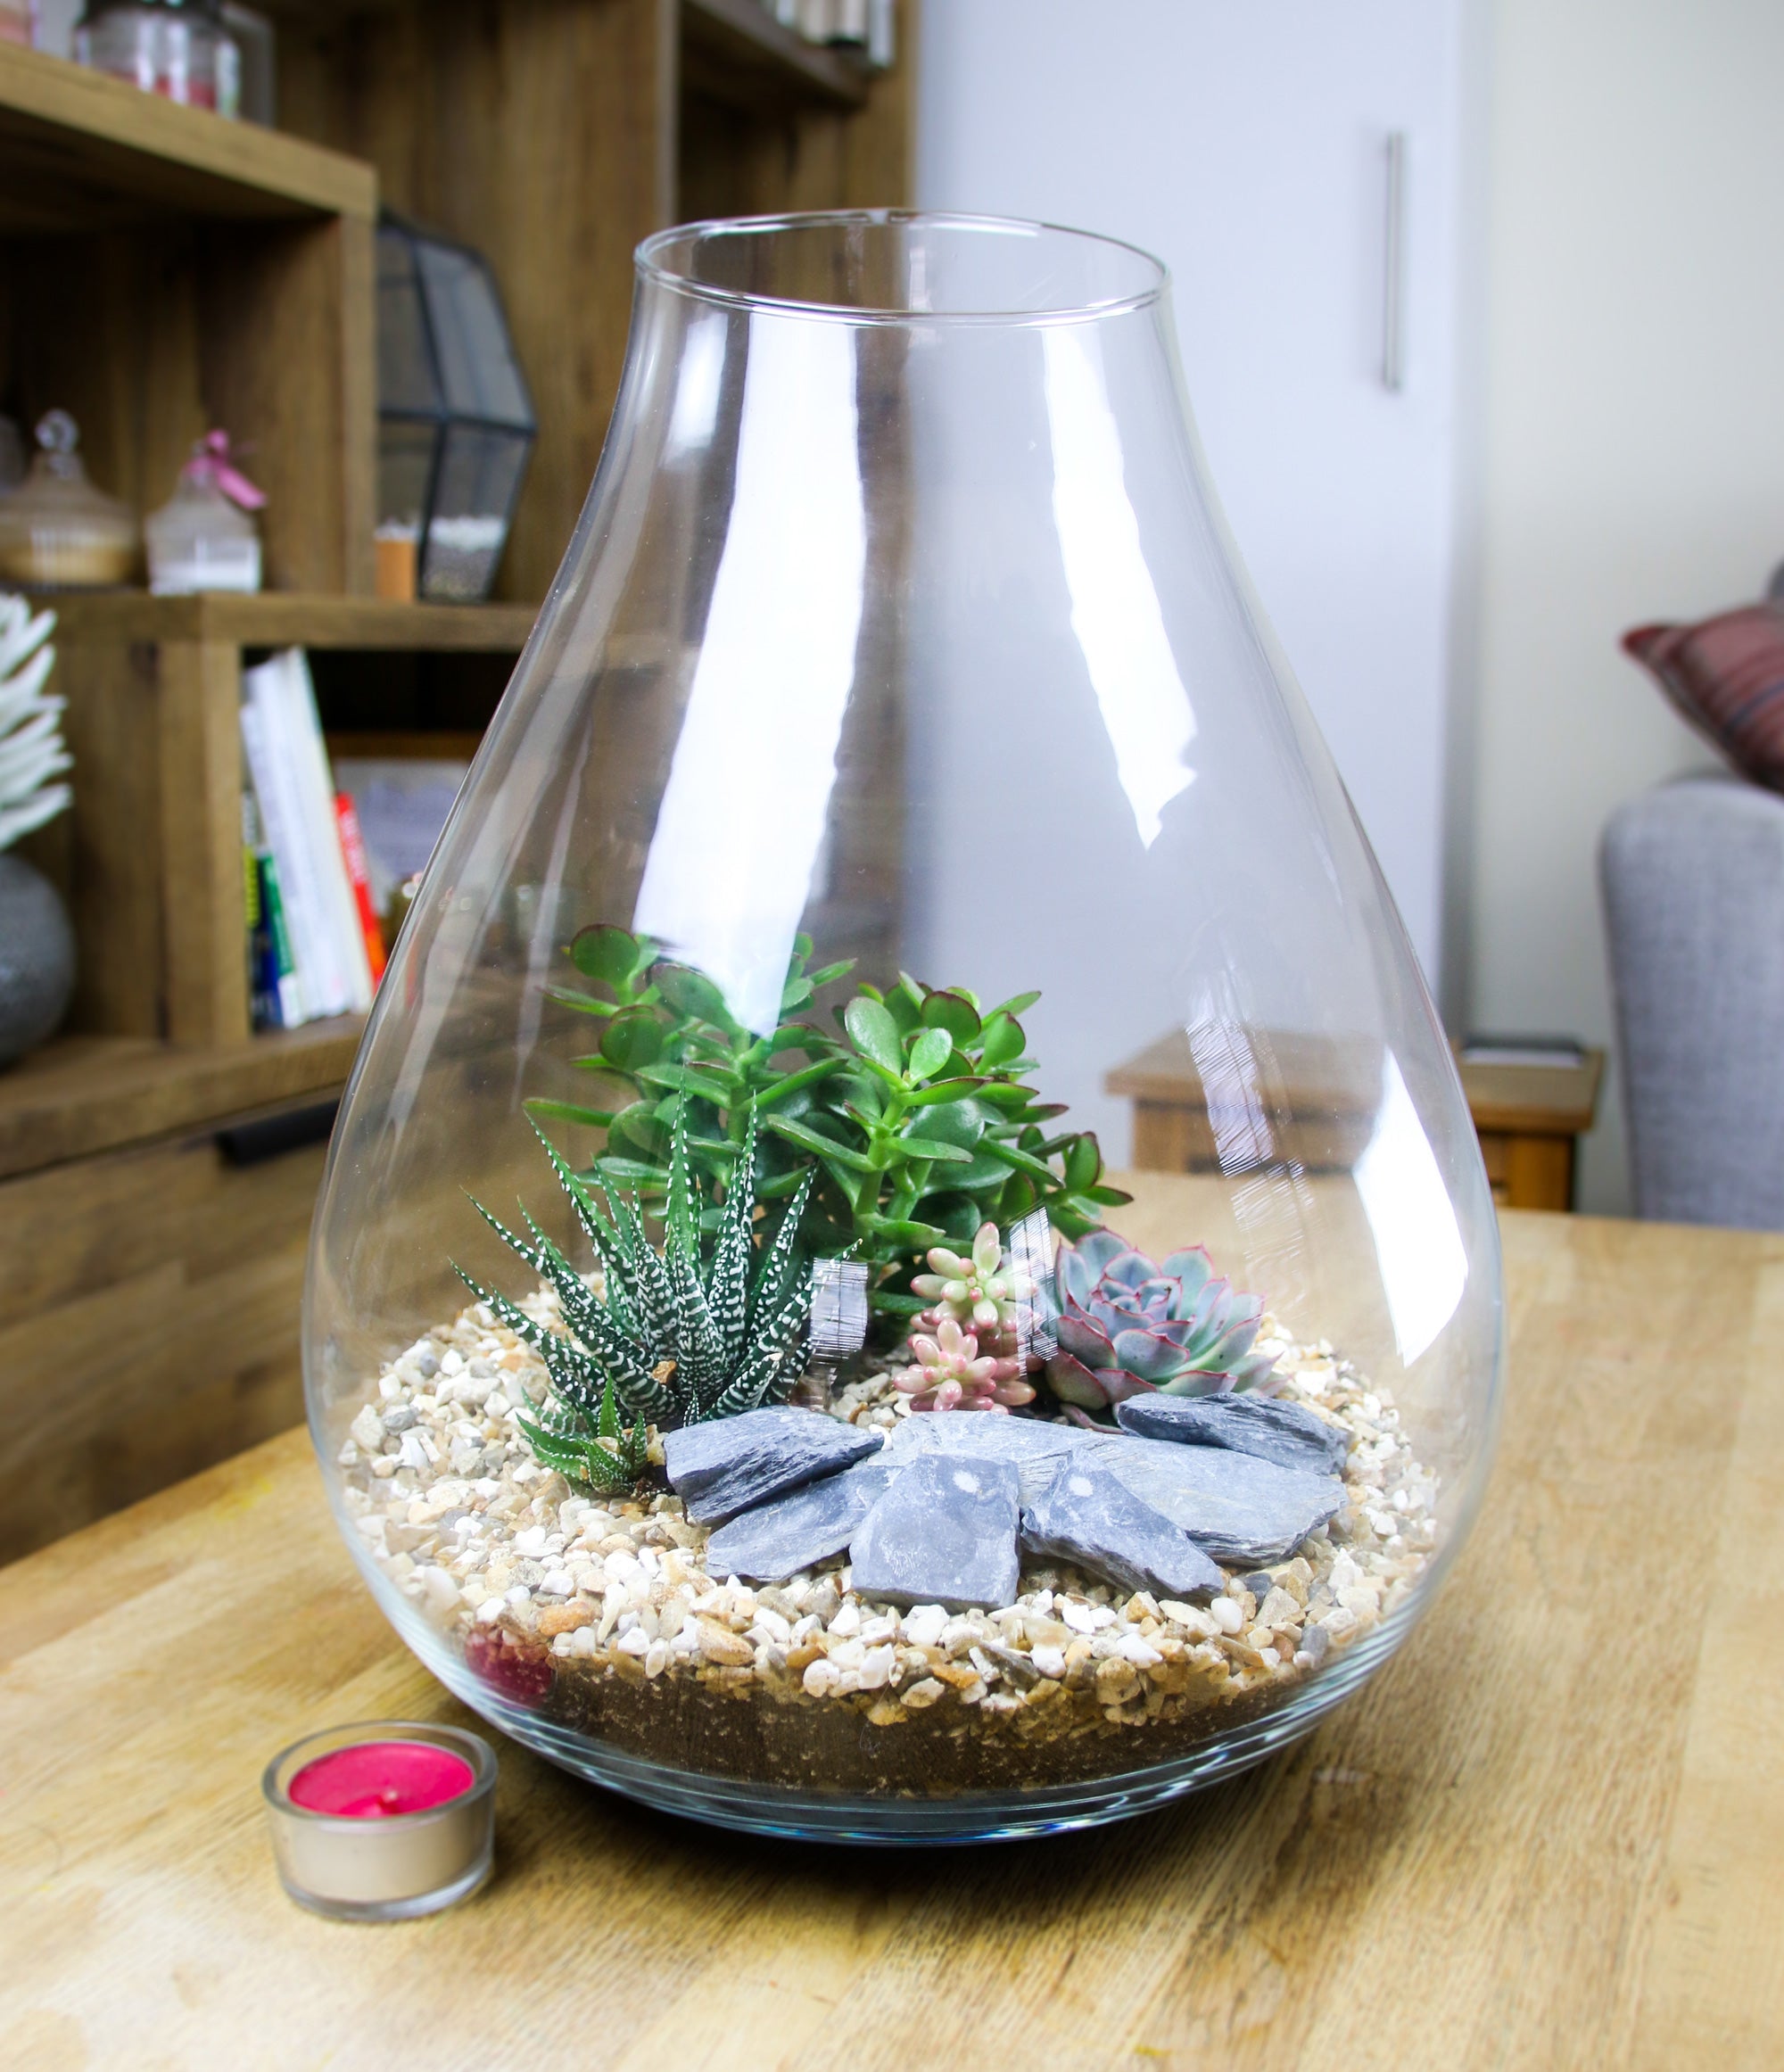 Designer glas terrarium kit with succulents